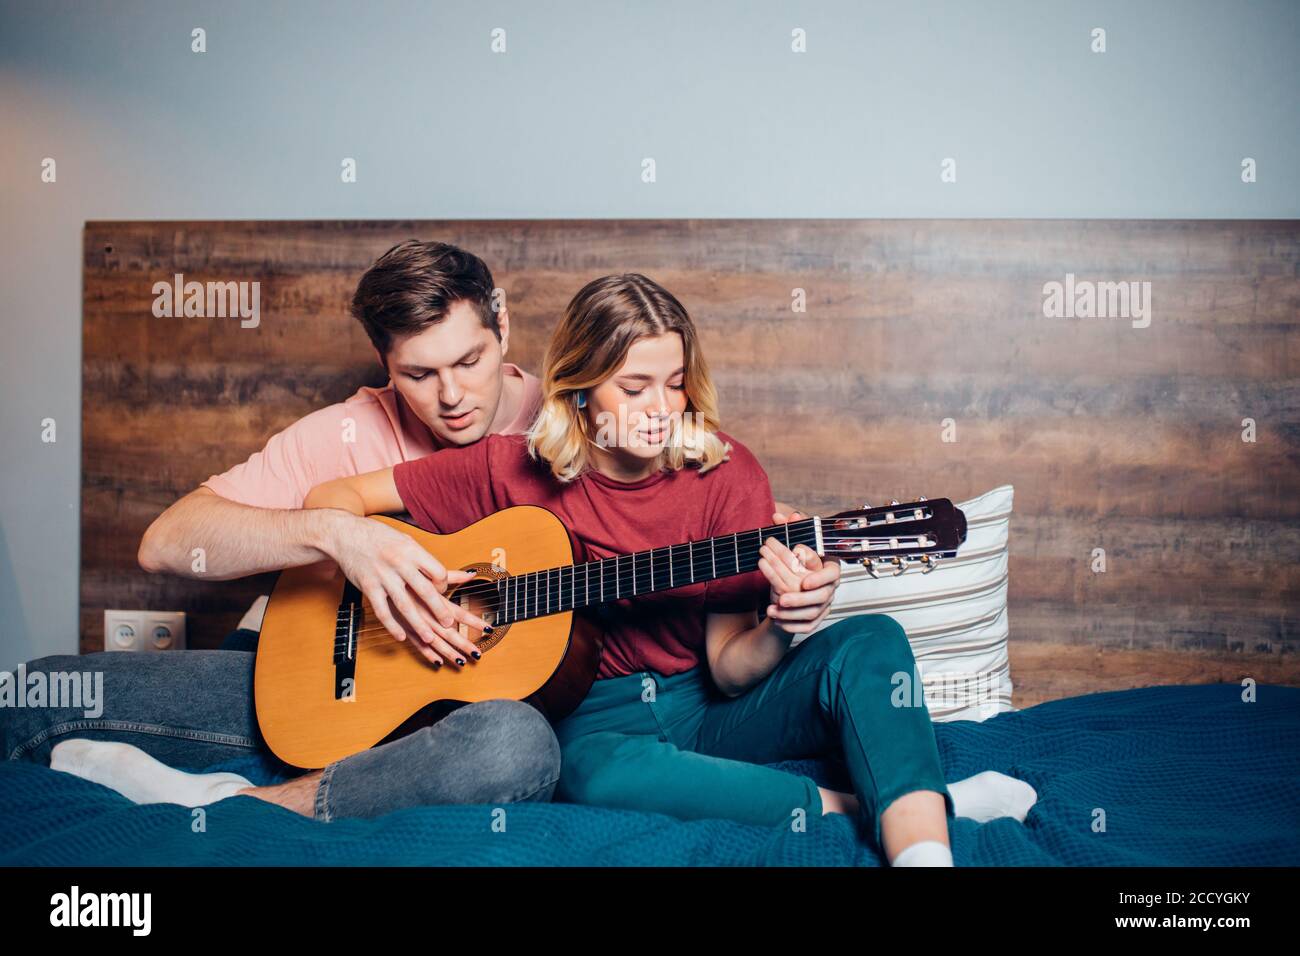 https://c8.alamy.com/compes/2ccygky/joven-novio-ensenando-a-su-novia-a-tocar-la-guitarra-en-casa-pareja-encantadora-usando-ropa-informal-en-el-dormitorio-juntos-2ccygky.jpg